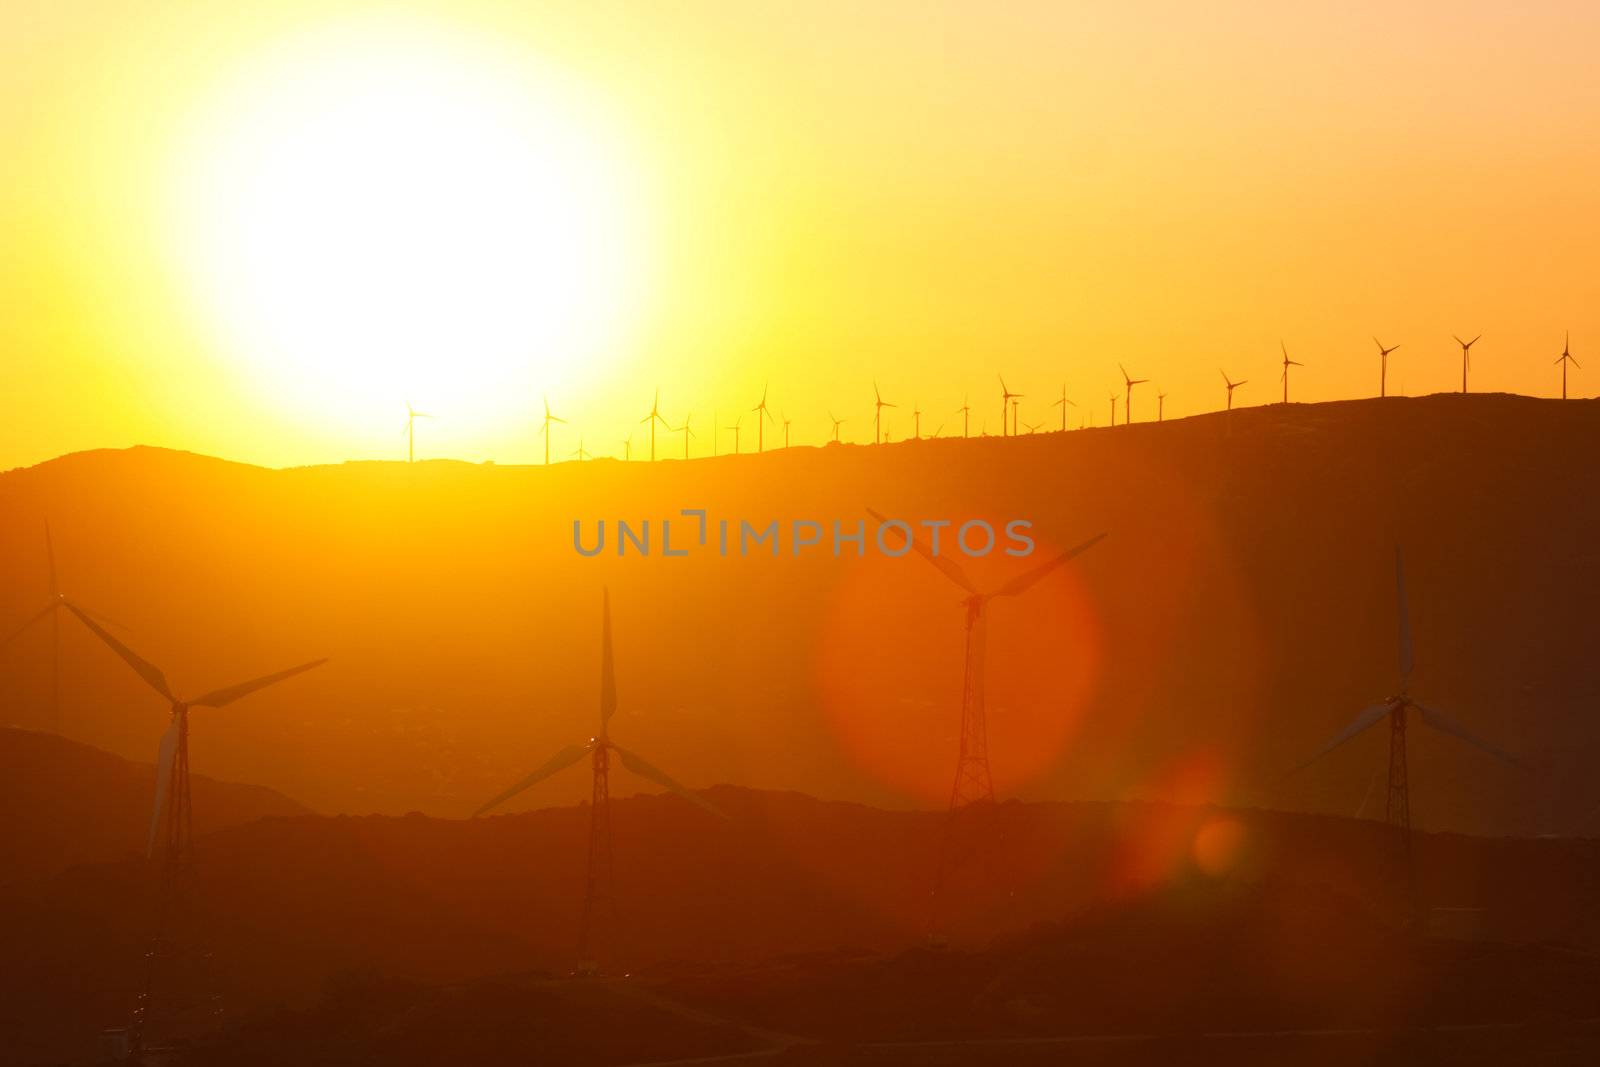 Wind farm in sunset by kasto